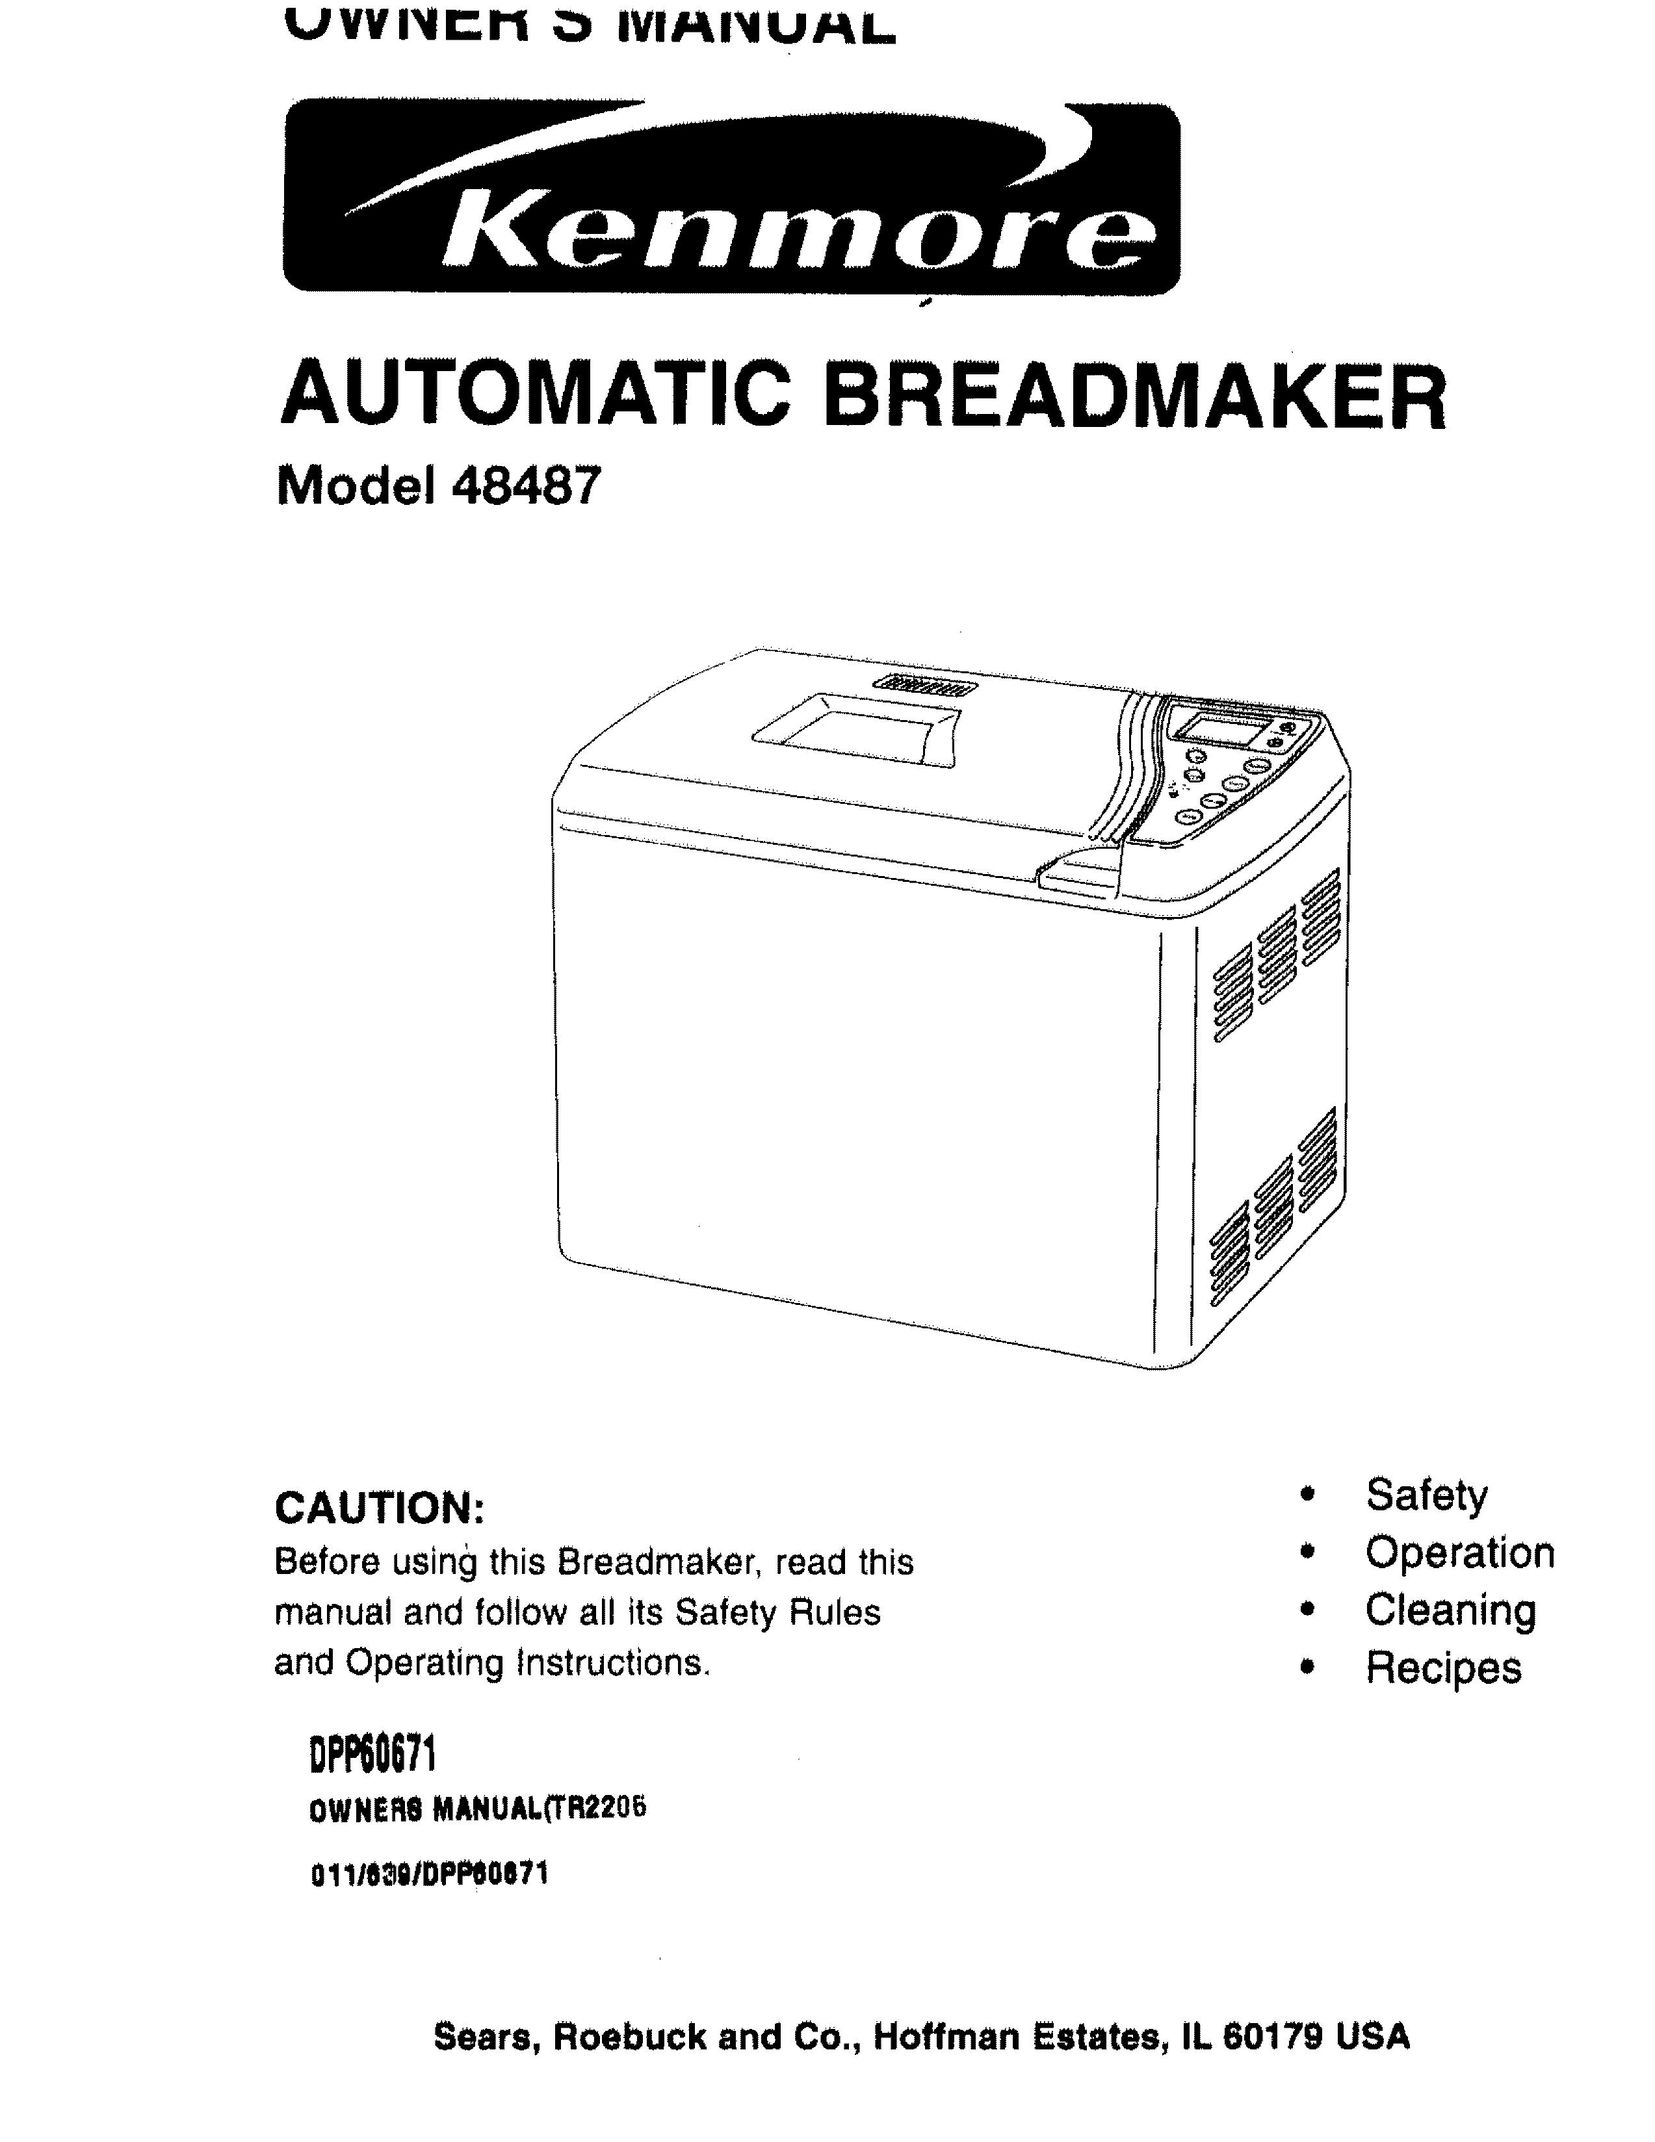 Kenmore 48487 Bread Maker User Manual